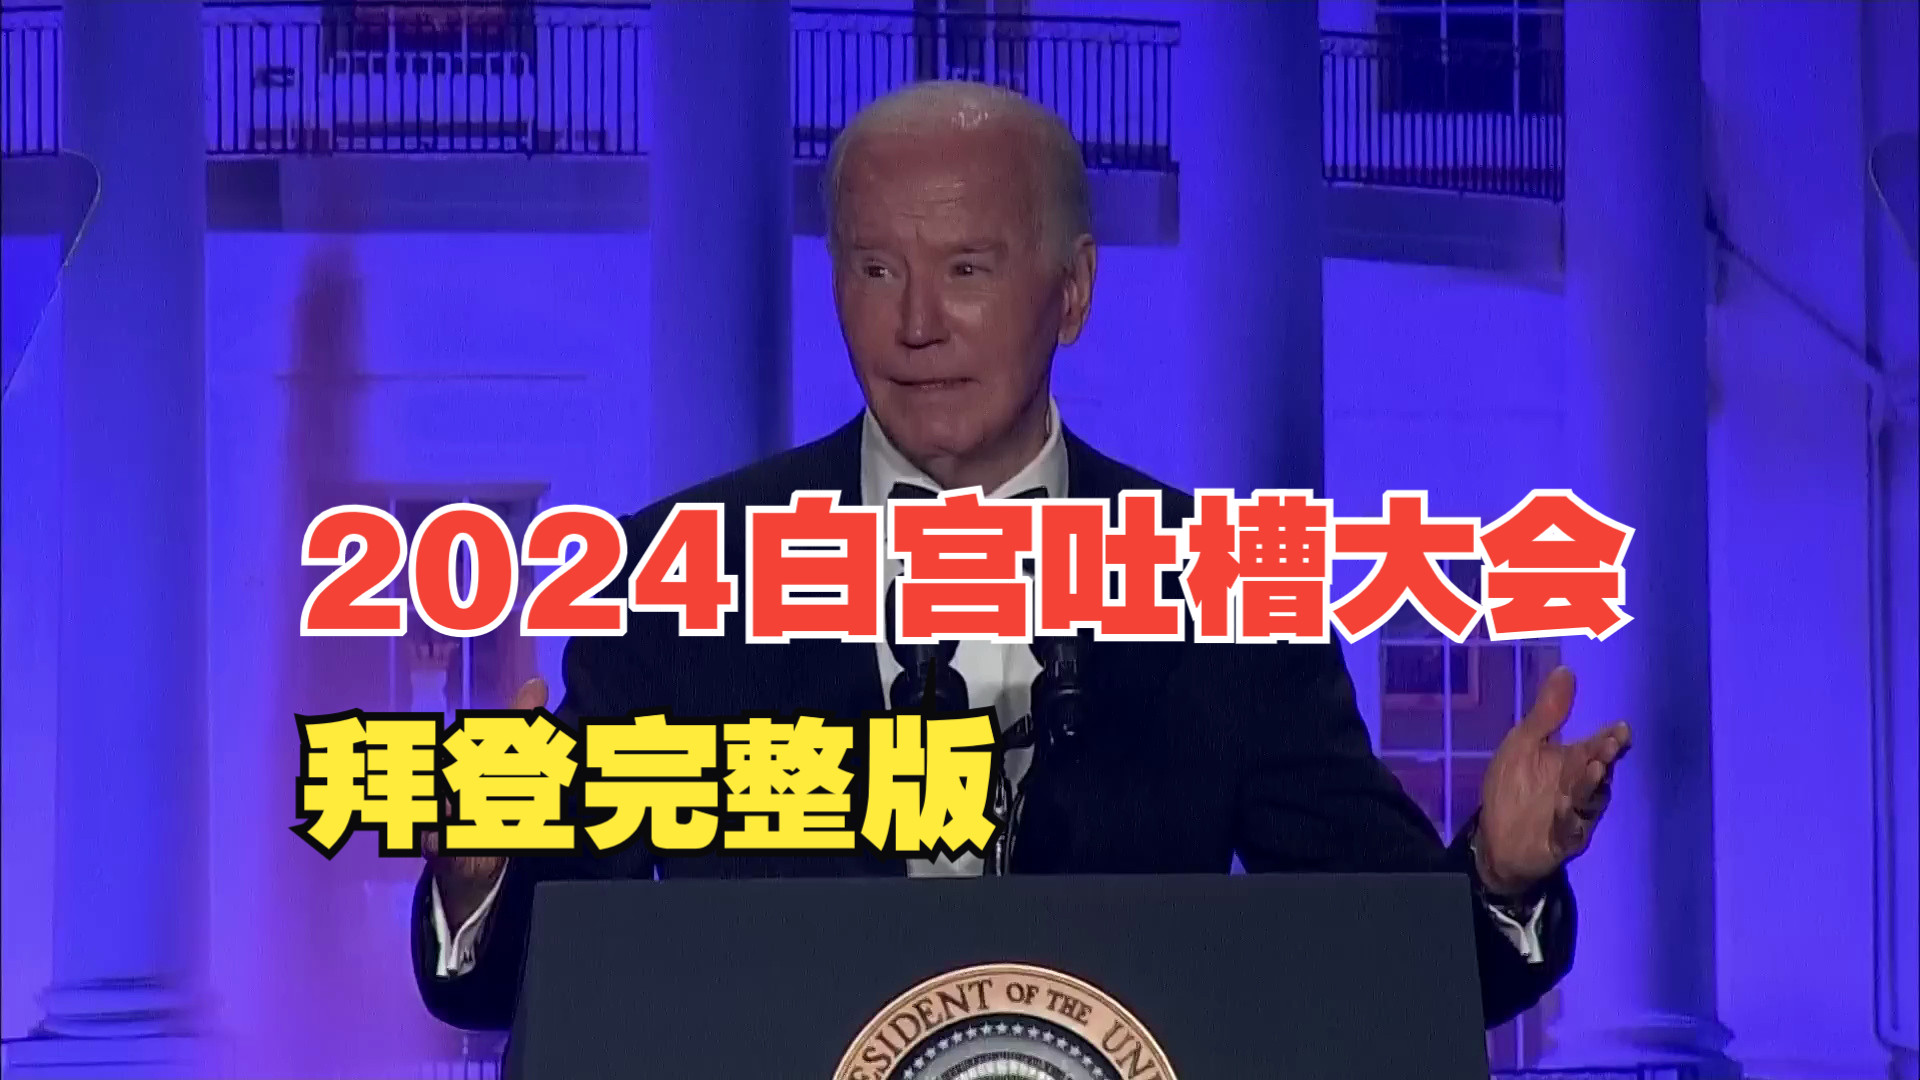 （英语字幕）Biden's 2024 White House correspondents’ dinner speech